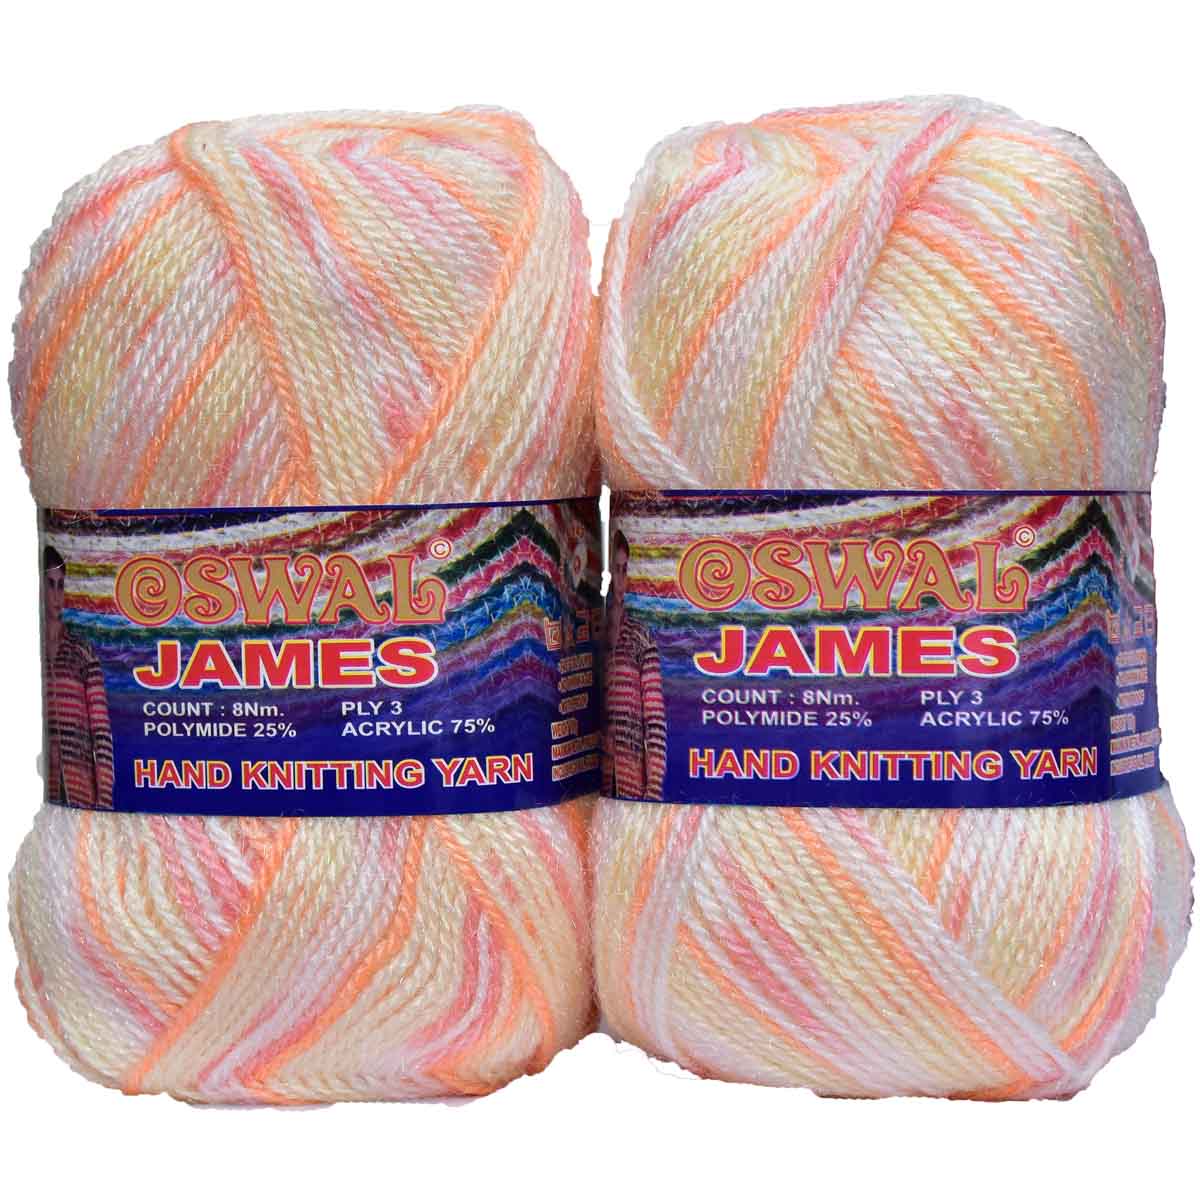 Oswal James Knitting Yarn